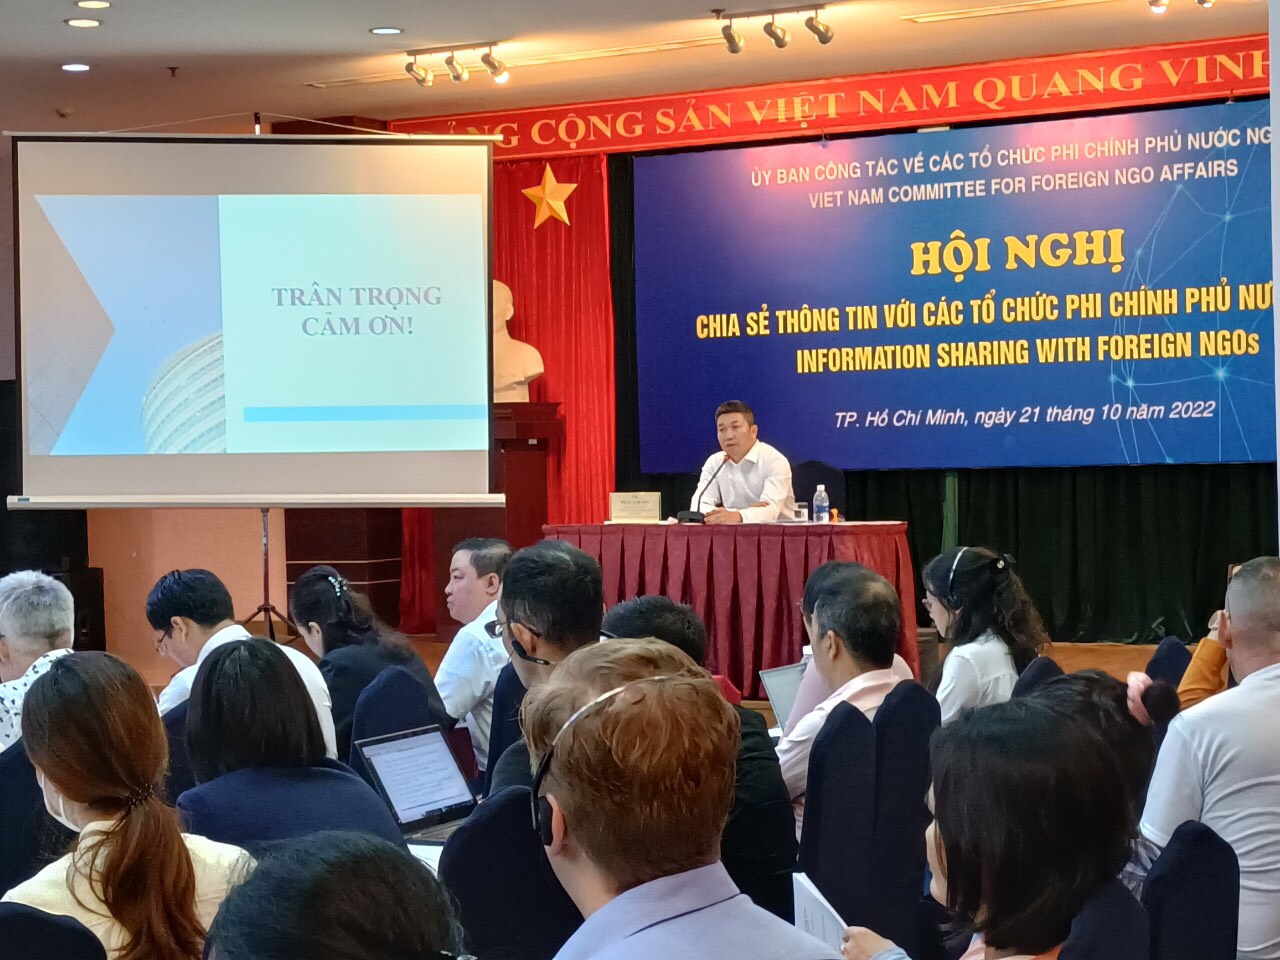 Chia sẻ thông tin với các tổ chức phi chính phủ nước ngoài tại TP. Hồ Chí Minh